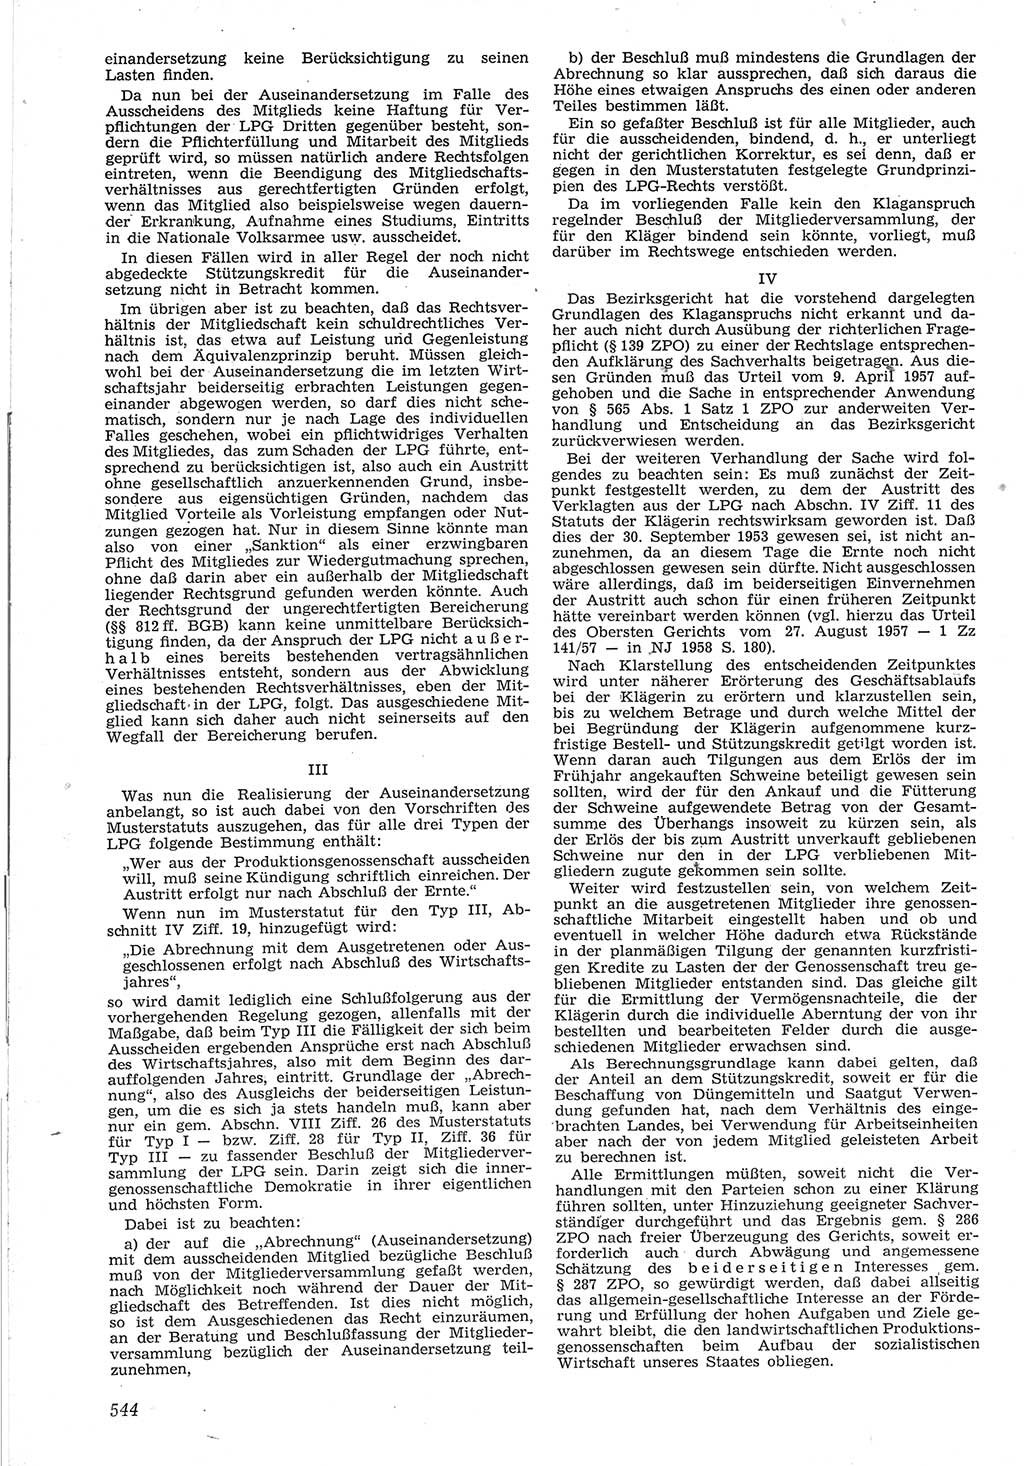 Neue Justiz (NJ), Zeitschrift für Recht und Rechtswissenschaft [Deutsche Demokratische Republik (DDR)], 12. Jahrgang 1958, Seite 544 (NJ DDR 1958, S. 544)